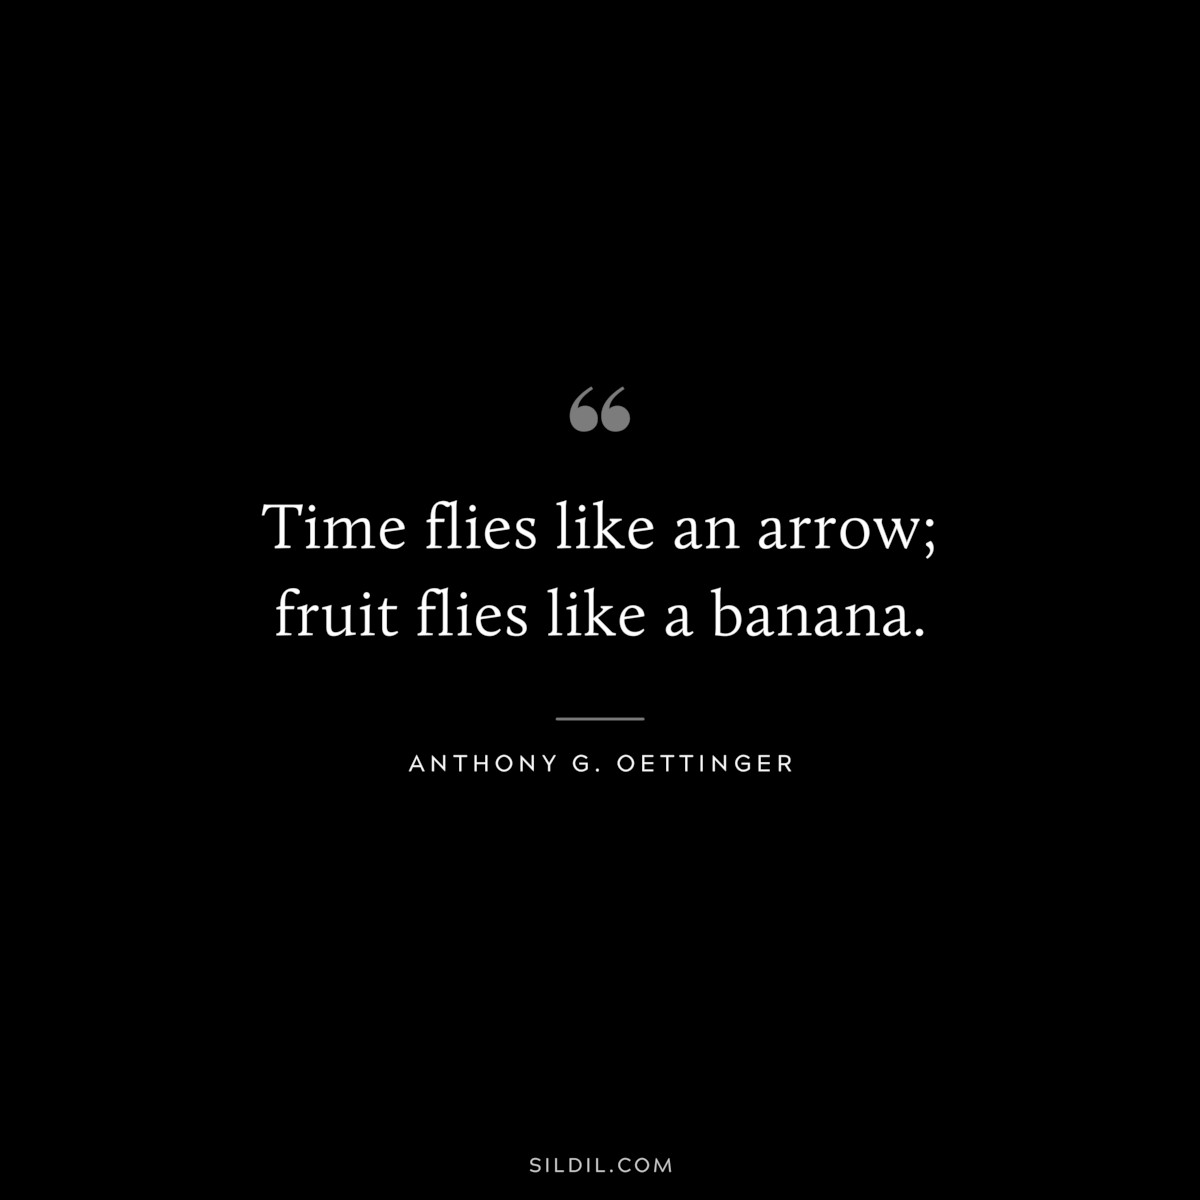 Time flies like an arrow; fruit flies like a banana. ― Anthony G. Oettinger